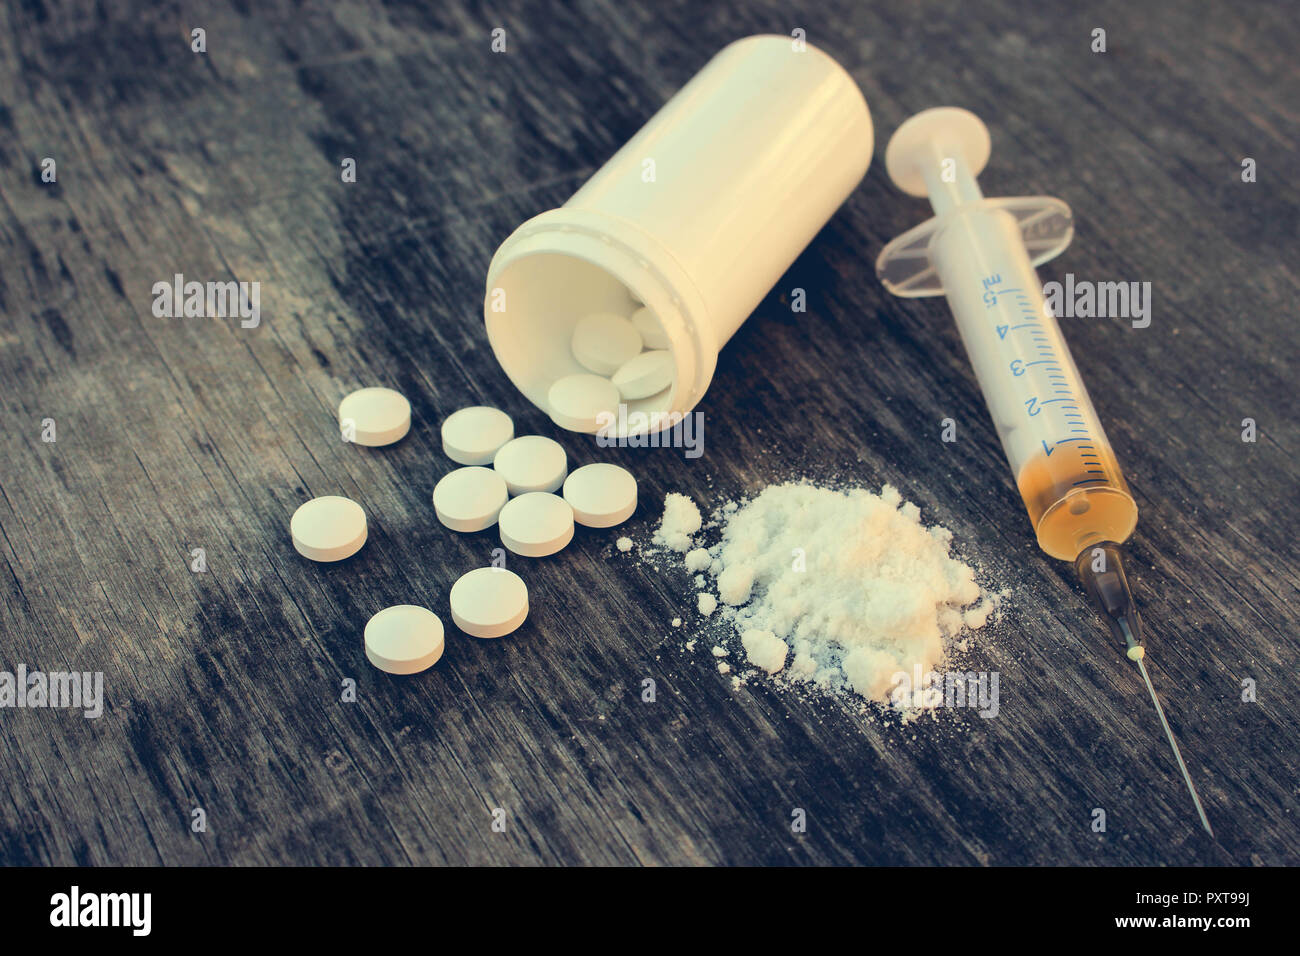 La toxicomanie sur le vieux fond de bois. Comprimé blanc, la seringue et l'héroïne. Banque D'Images